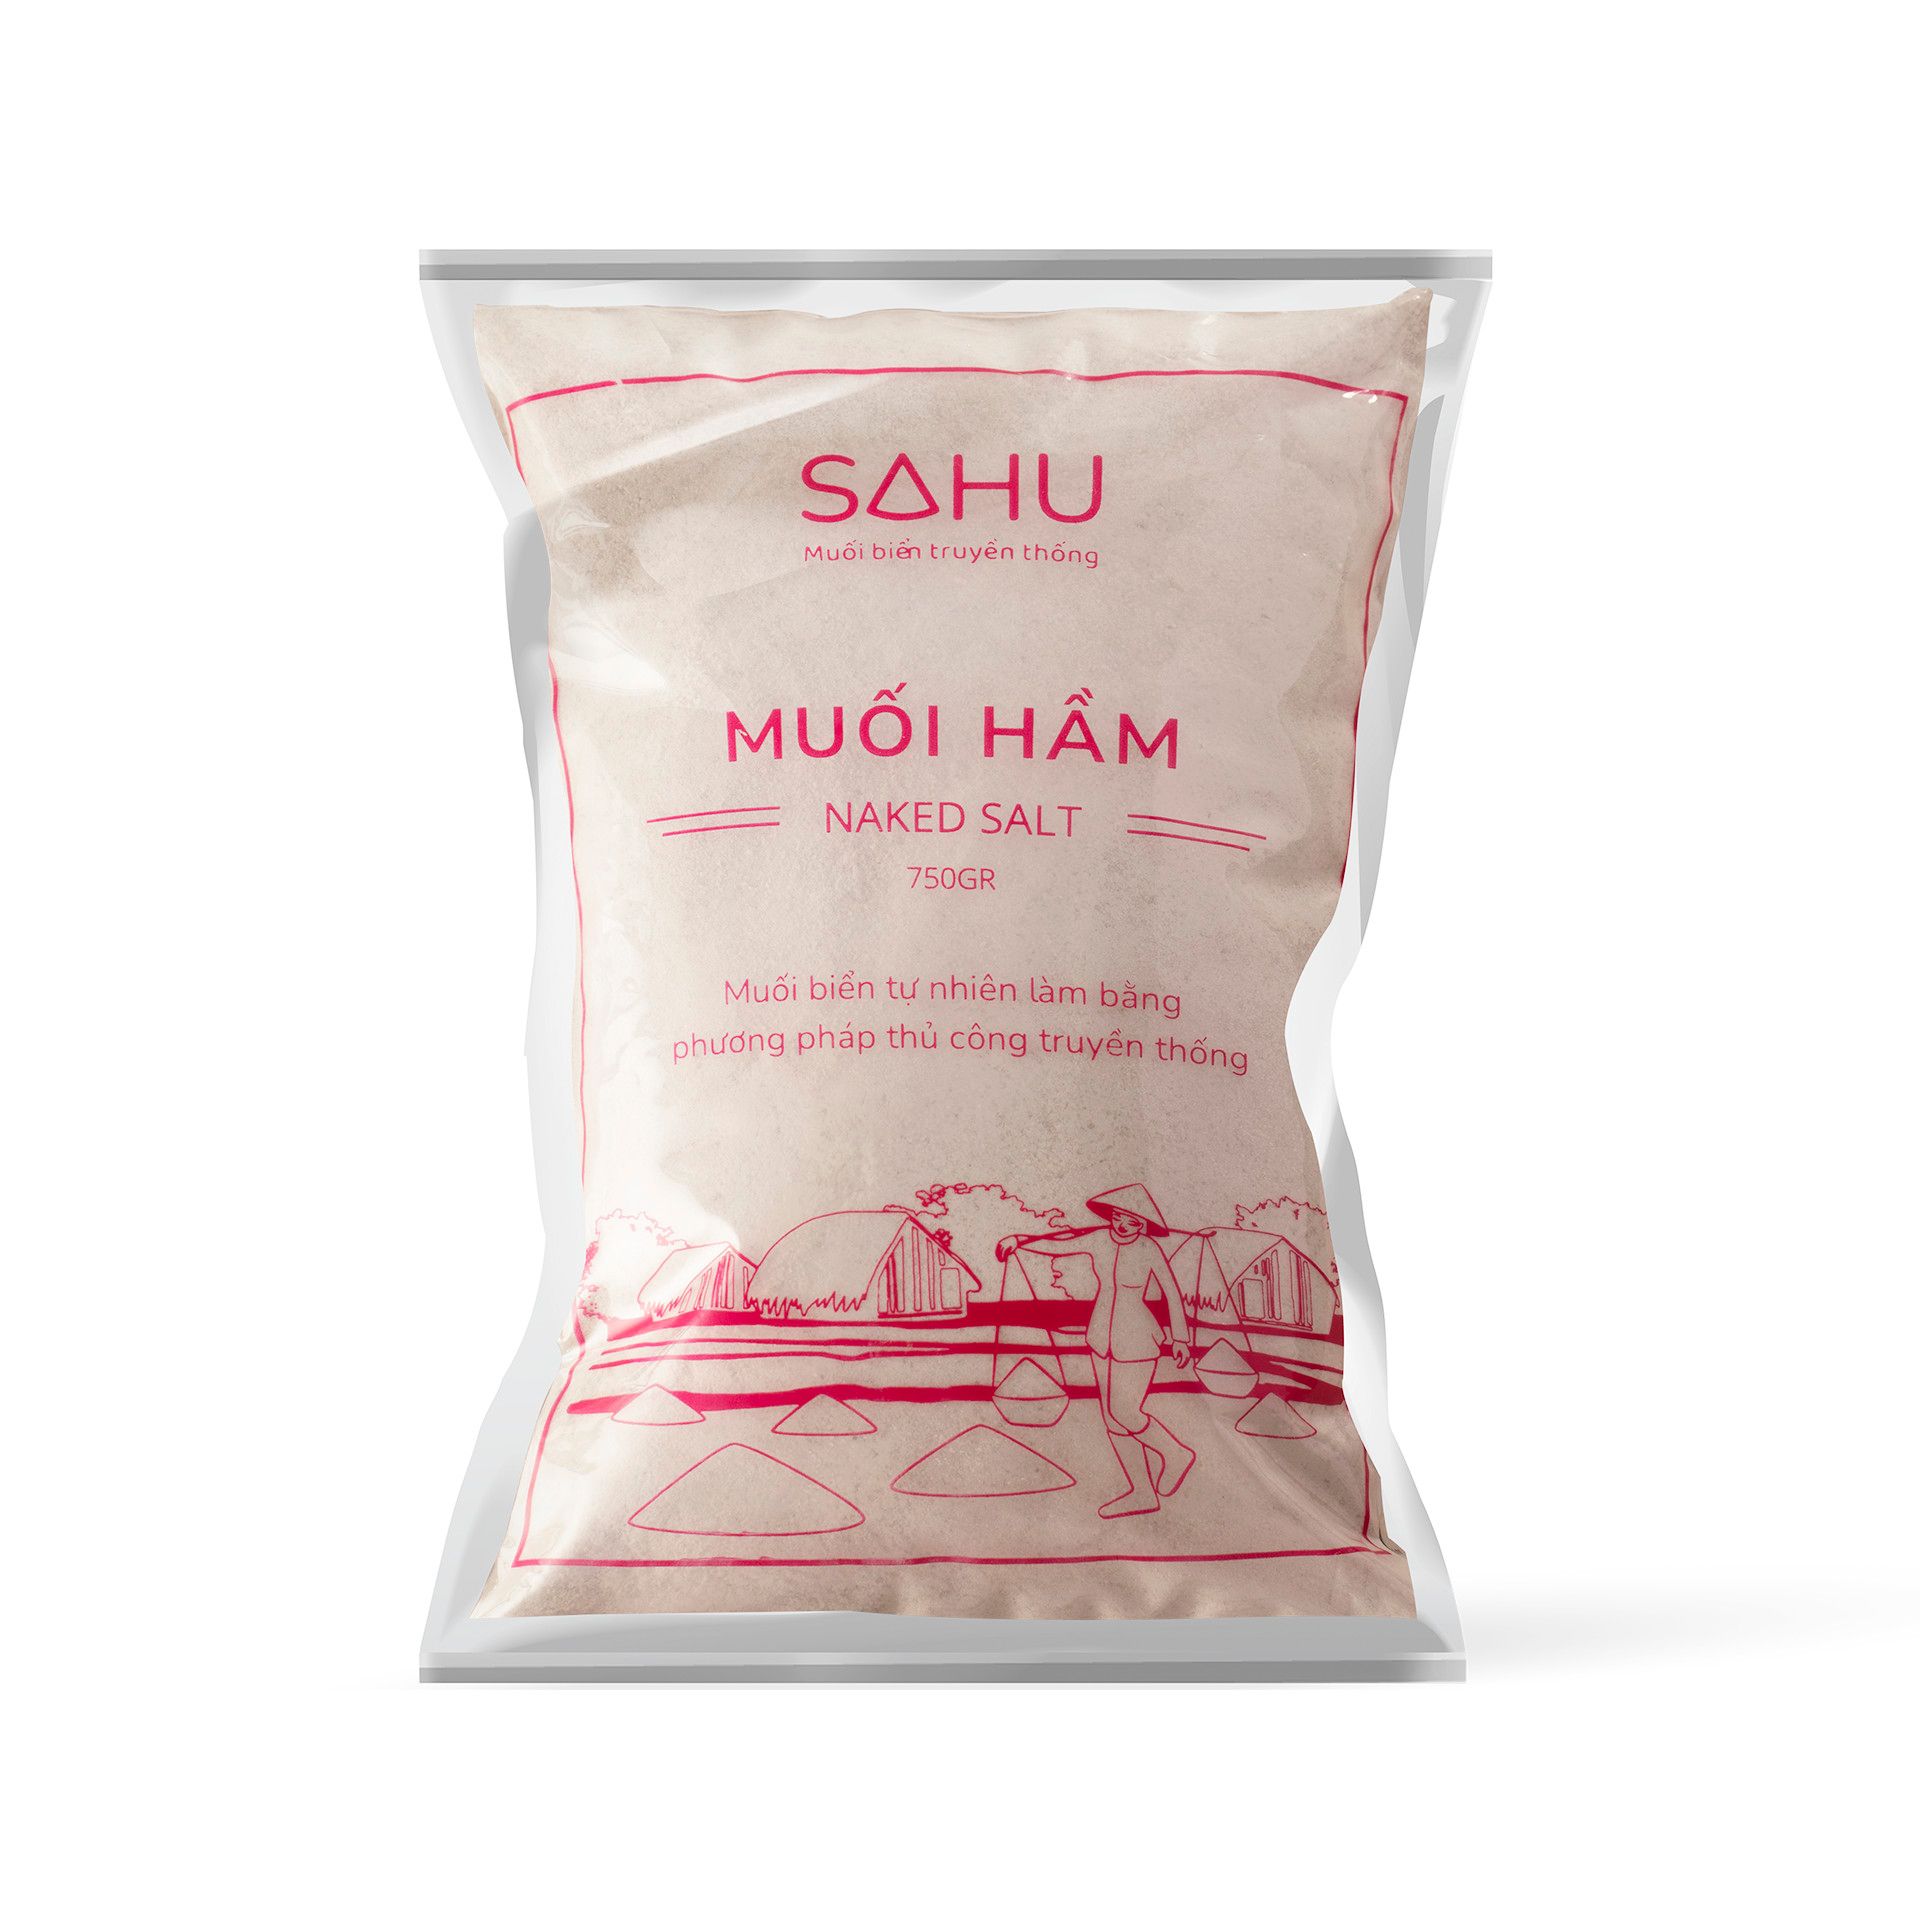 Roasted Sea Salt Sahu 750G- Roasted Sea Salt Sahu 750G